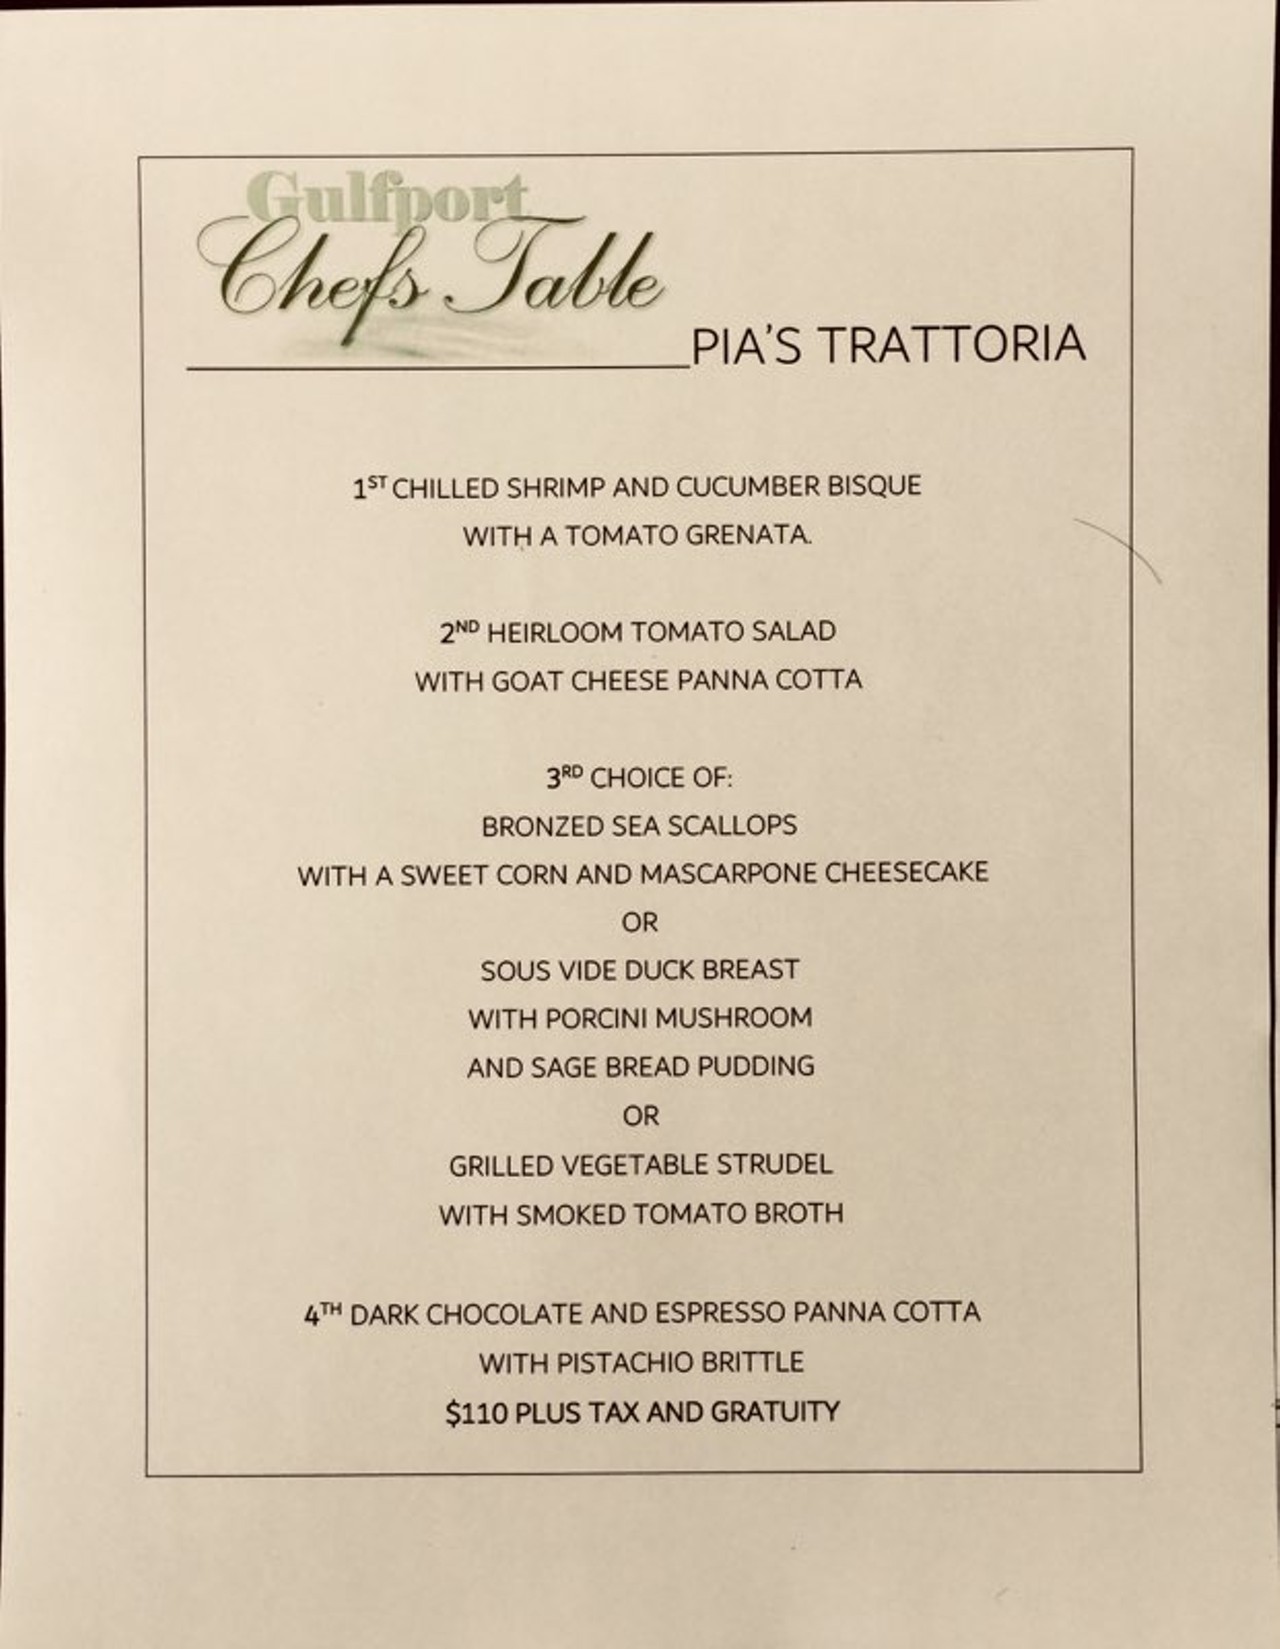 Gulfport Chef's Table 2018 Pia's Trattoria menu